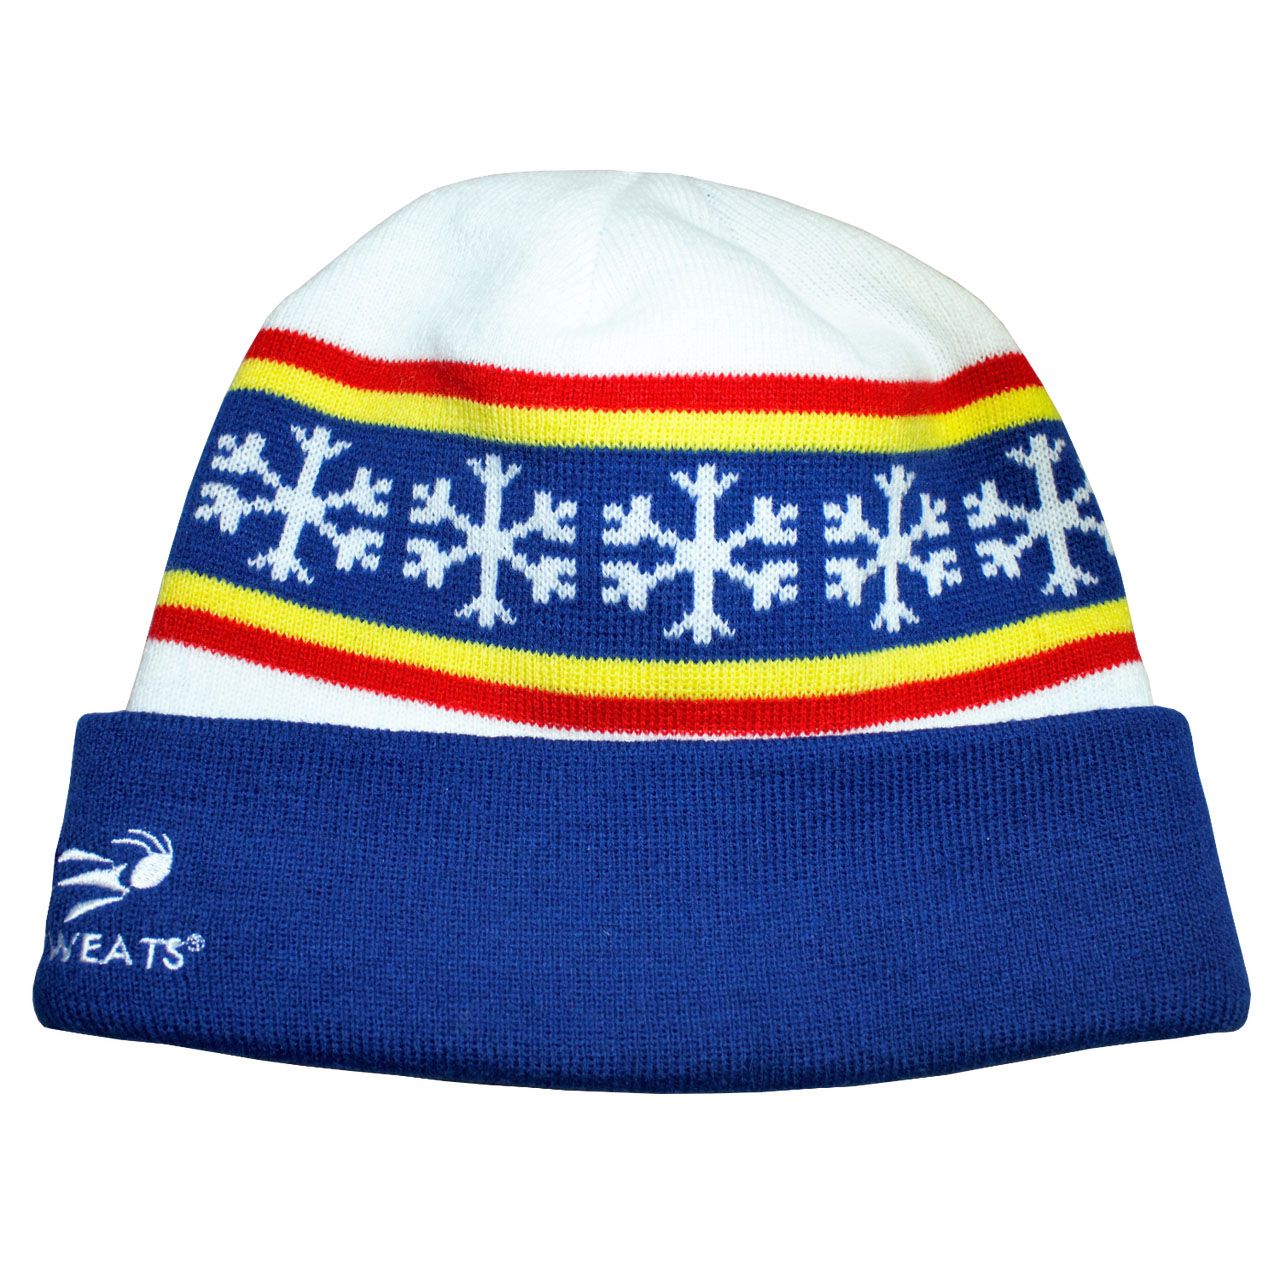 騎跑泳者-HEADSWEATS汗淂帽:Cuff Beanie - Let it Snow.冬季低溫,寒冬,頭部保暖 毛帽